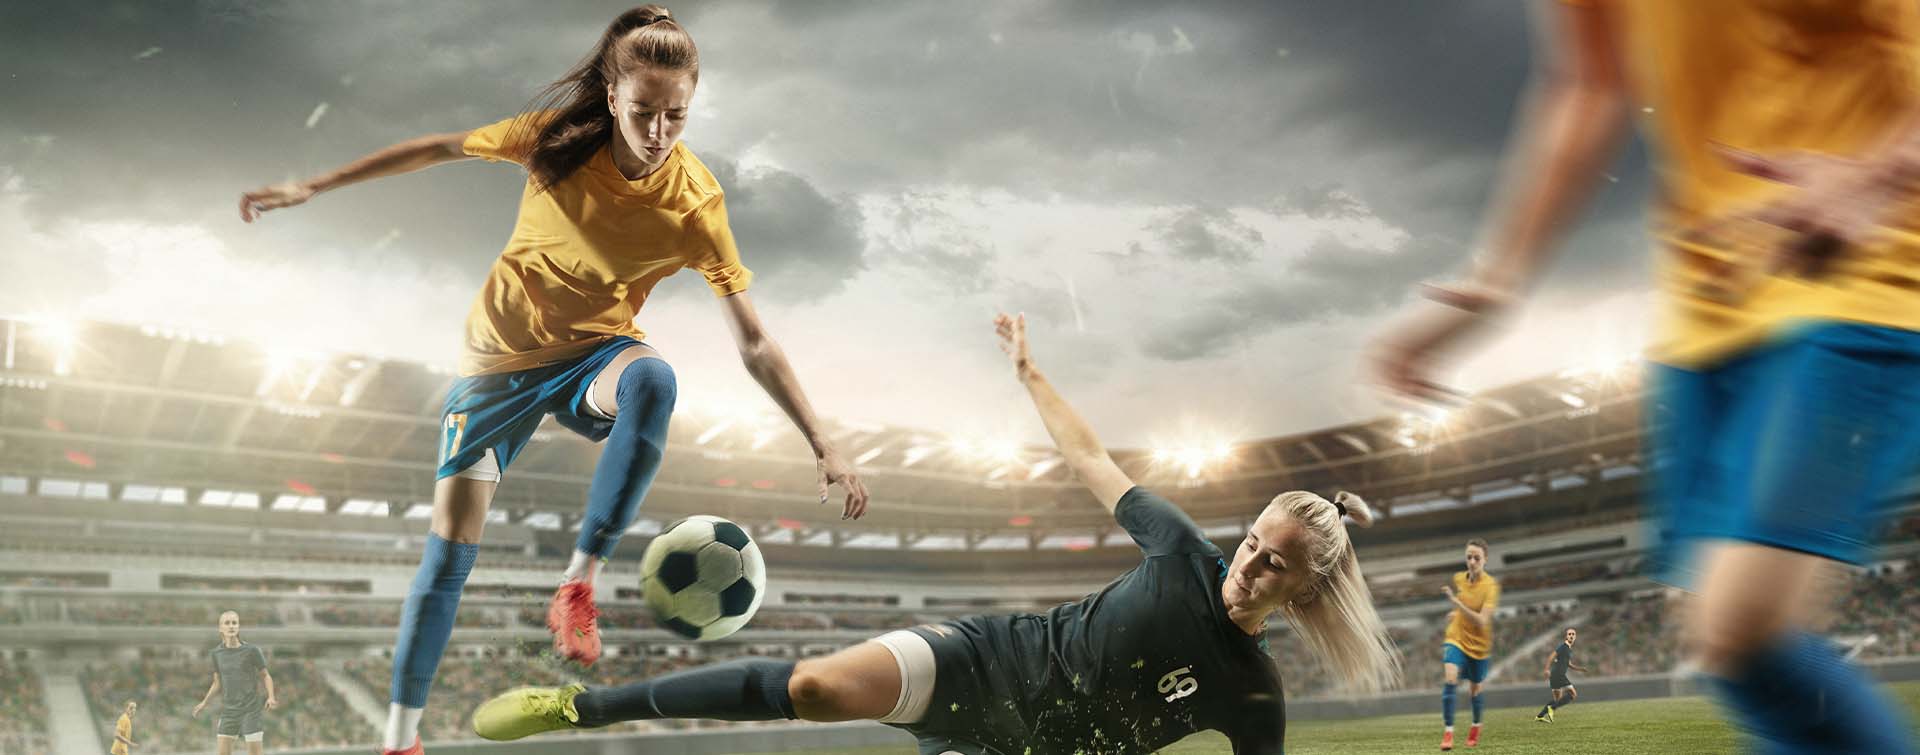 Piłka nożna kobiet – dowiedz się wszystkiego o rozgrywkach!